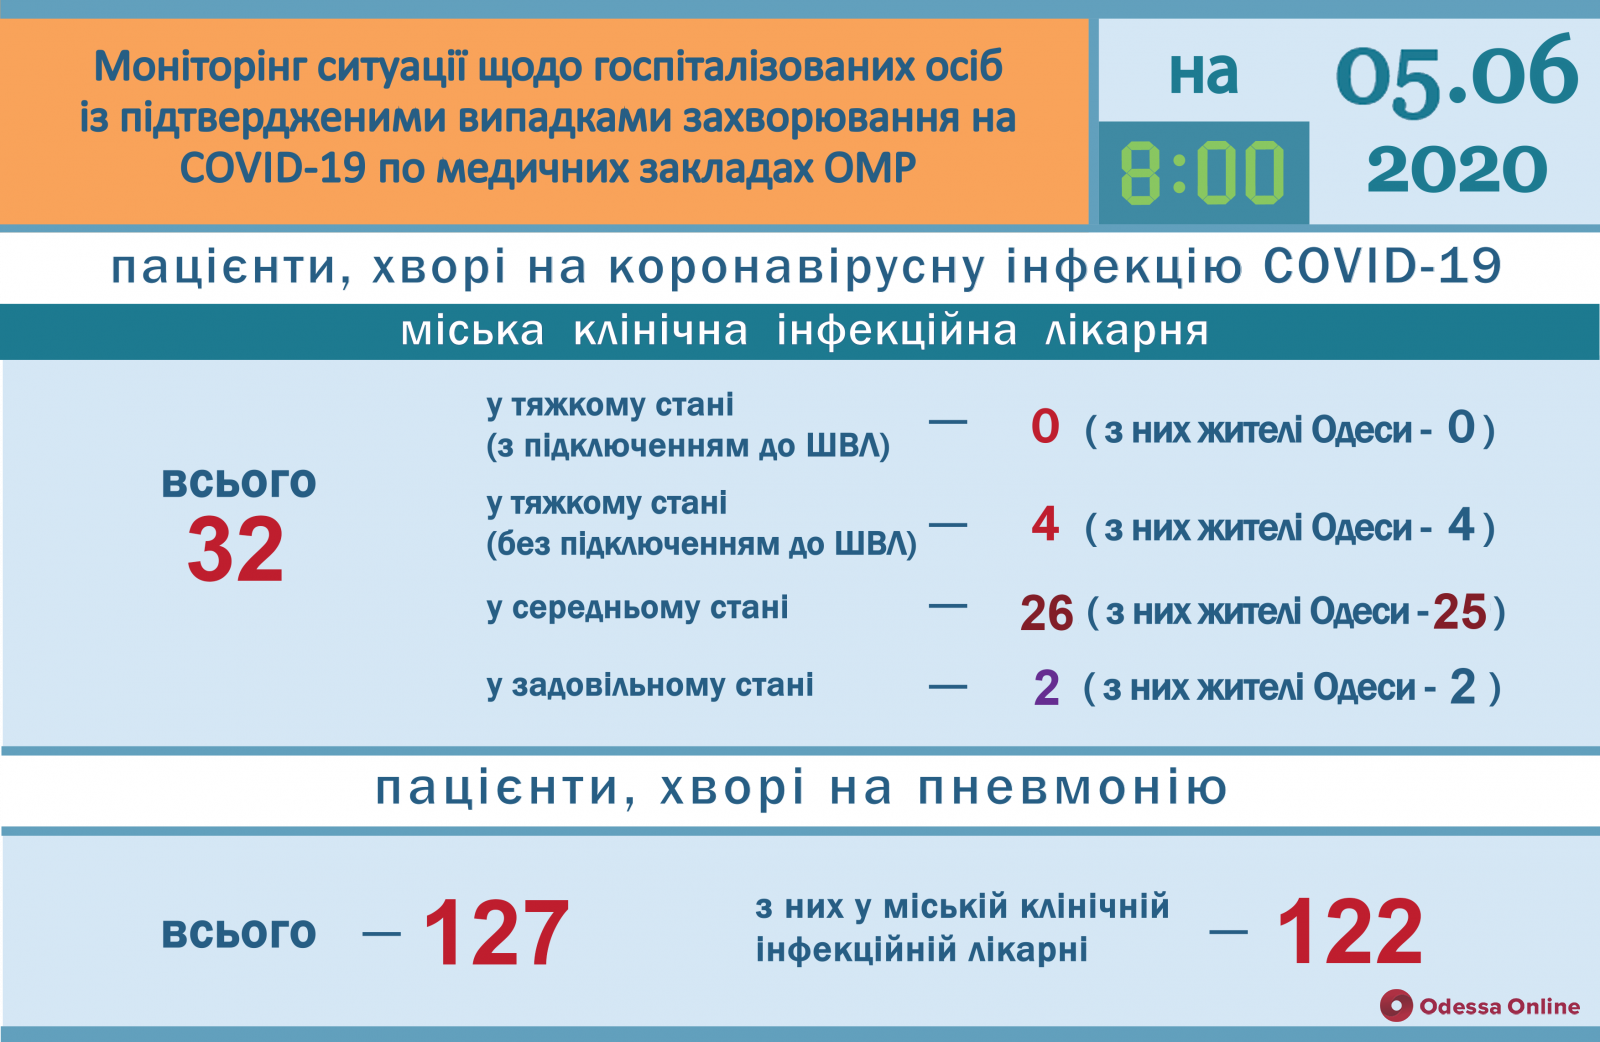 Одесса: от коронавируса выздоровели уже 99 человек